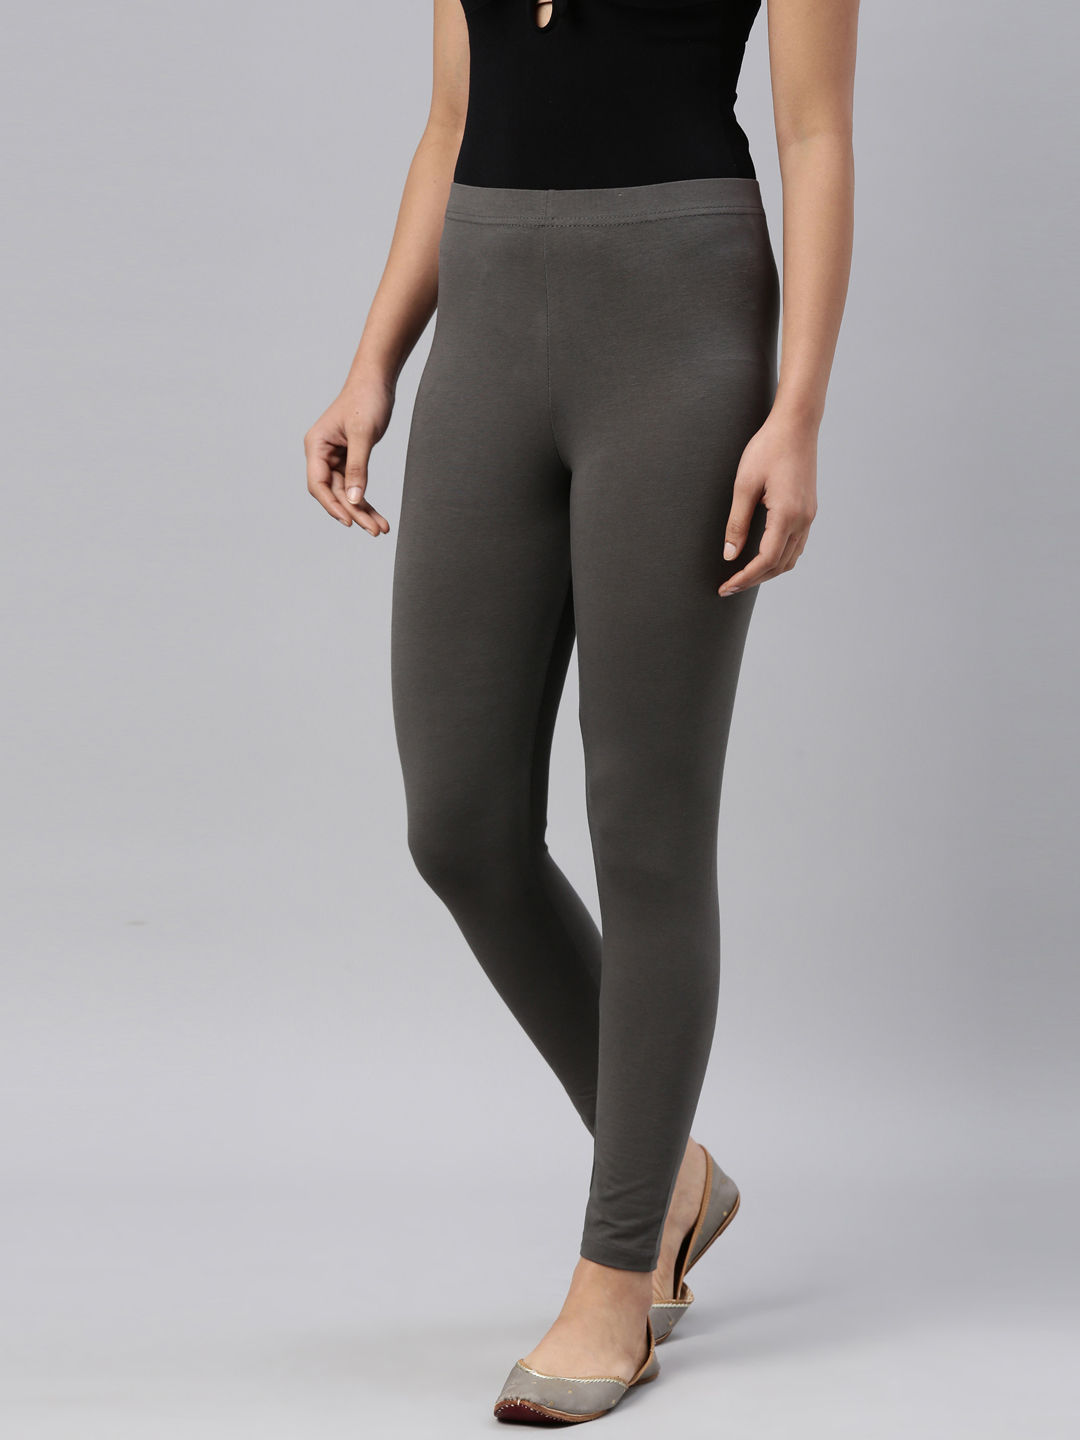 Buy Grey Leggings for Women by Amante Online | Ajio.com